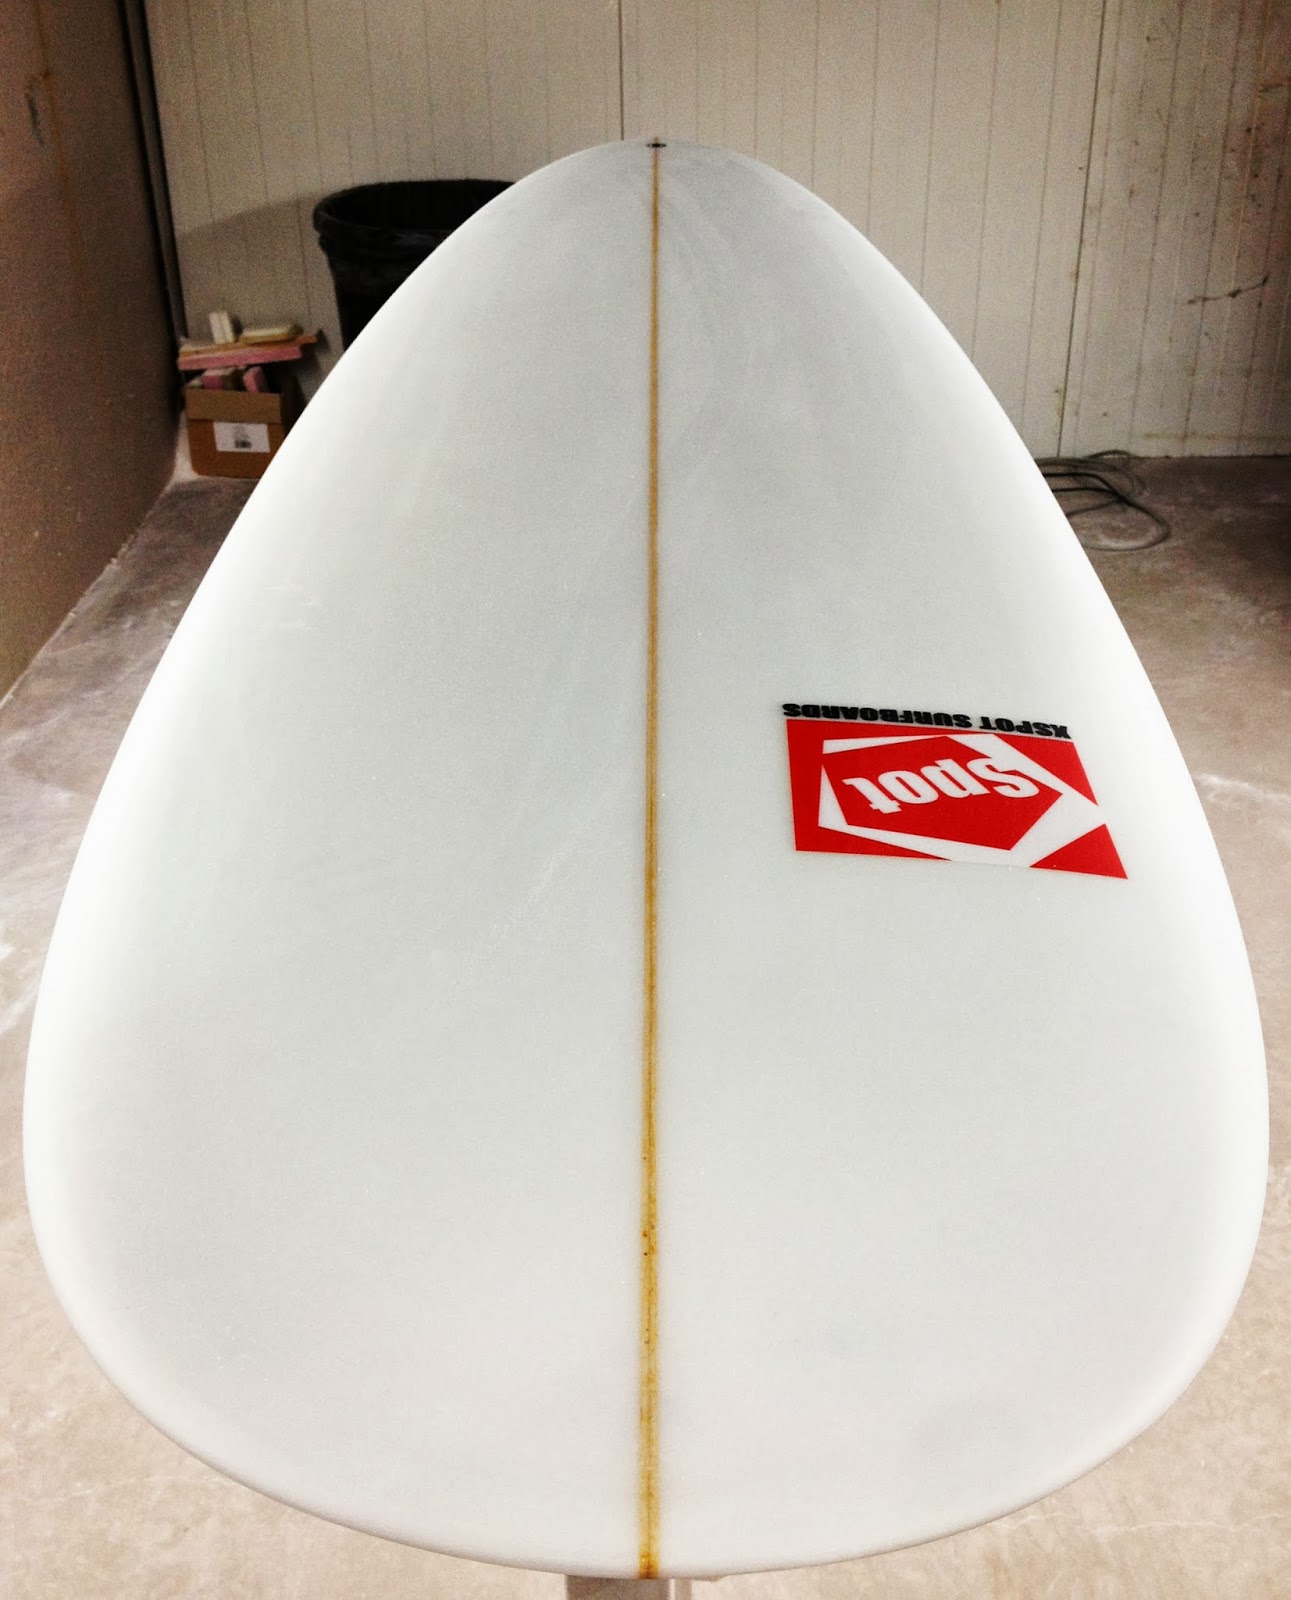 xspot surfboards: egg model